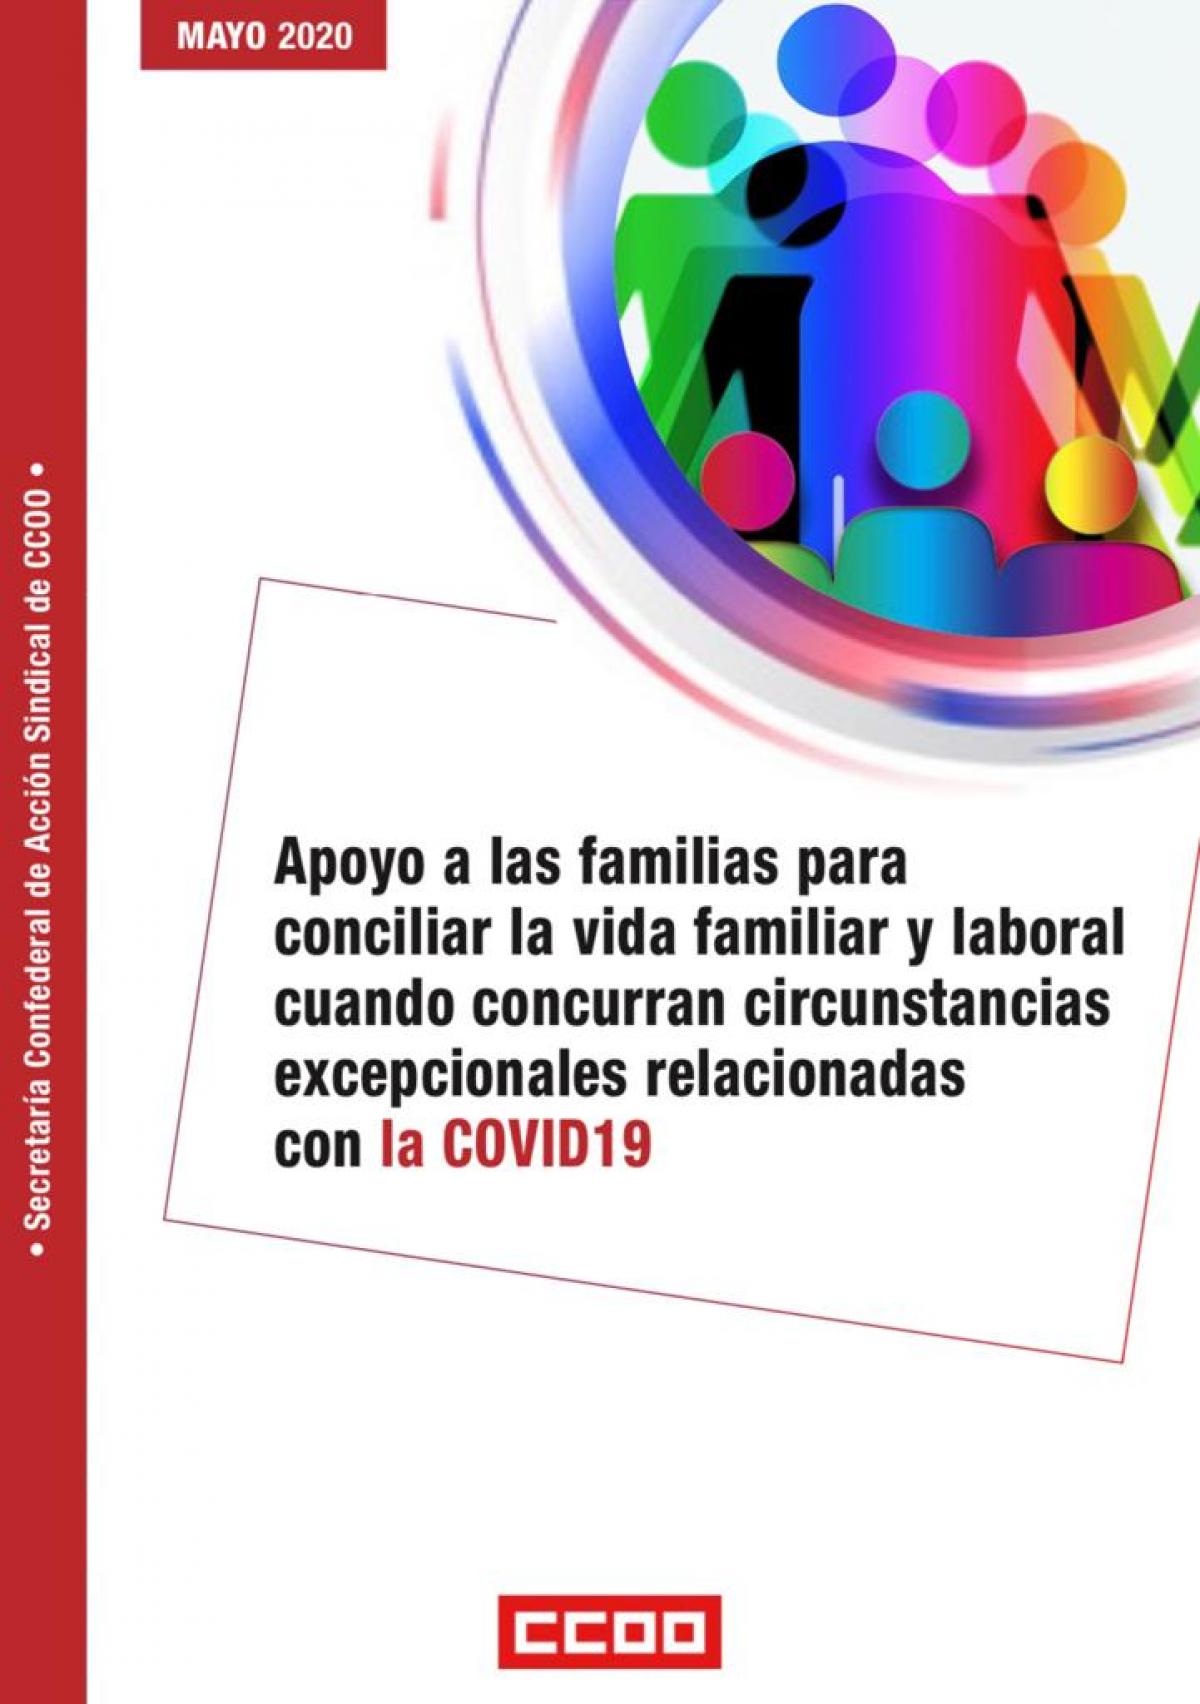 Apoyo a las familias para conciliar la vida familiar y laboral cuando concurran en circunstancias excepcionales relacionada con la COVID19.